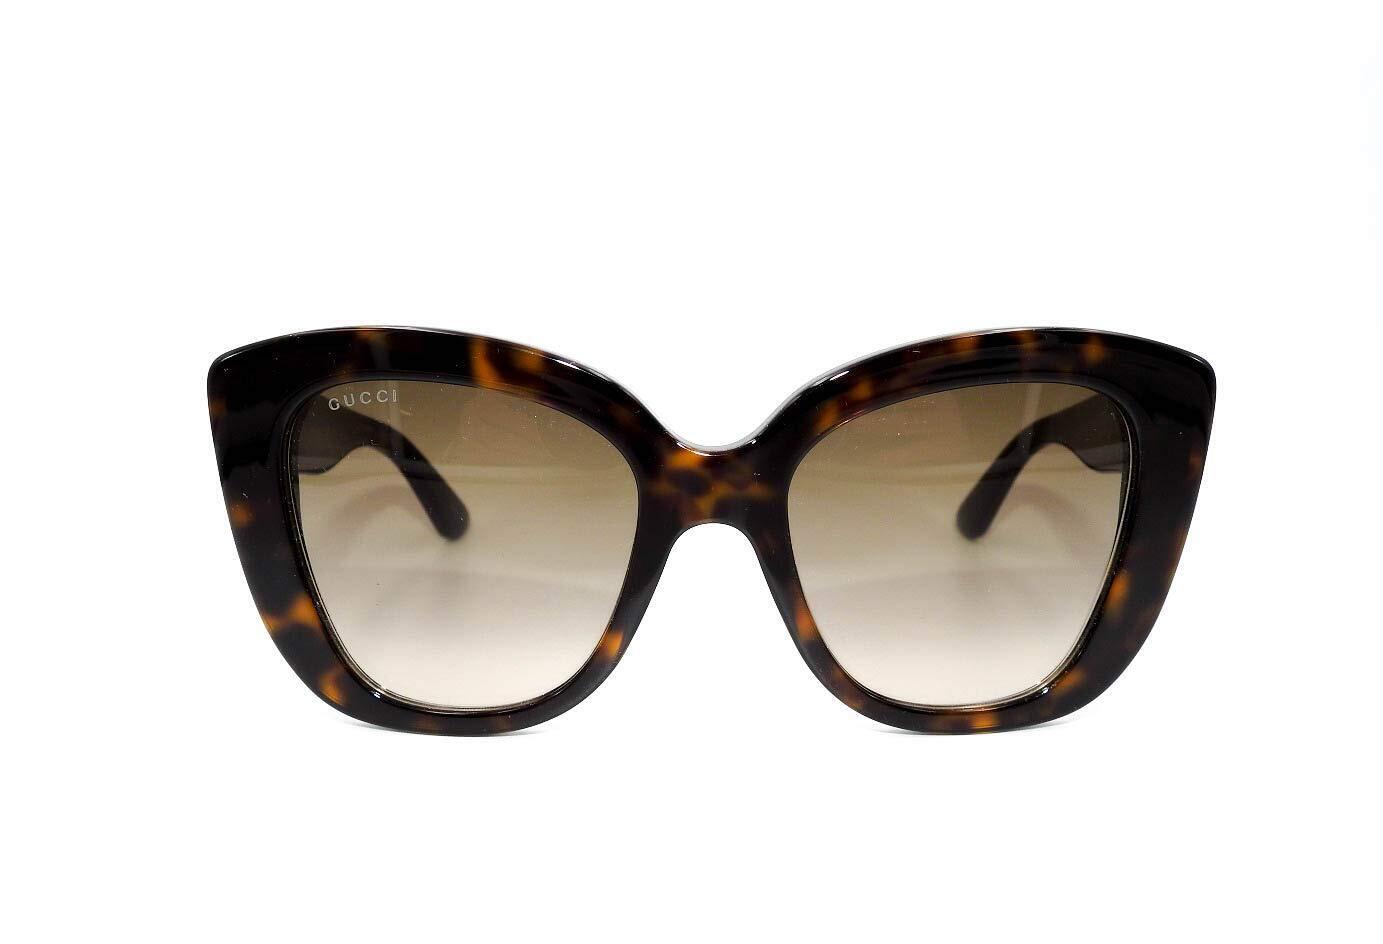 Gucci GG0327S-002 52mm New Sunglasses